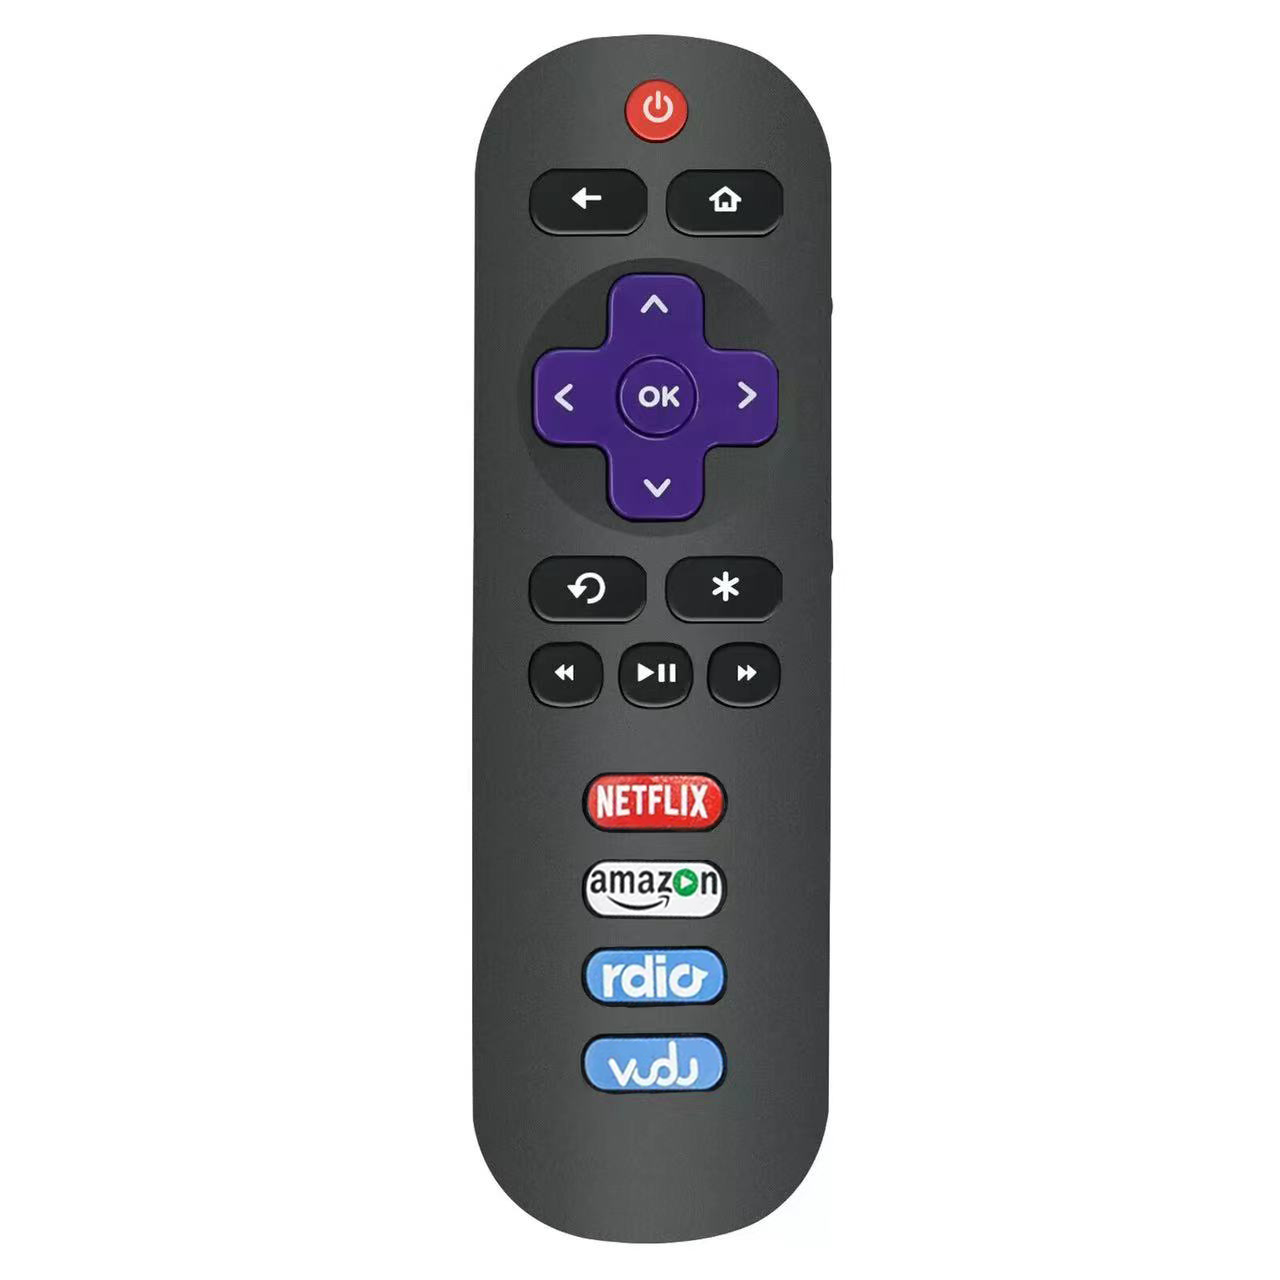 HY Bluetooth remote control Yoyenera RC280 YA ROKU TV yowongolera kutali ndi Netflix Sling Hulu Vudu hot key